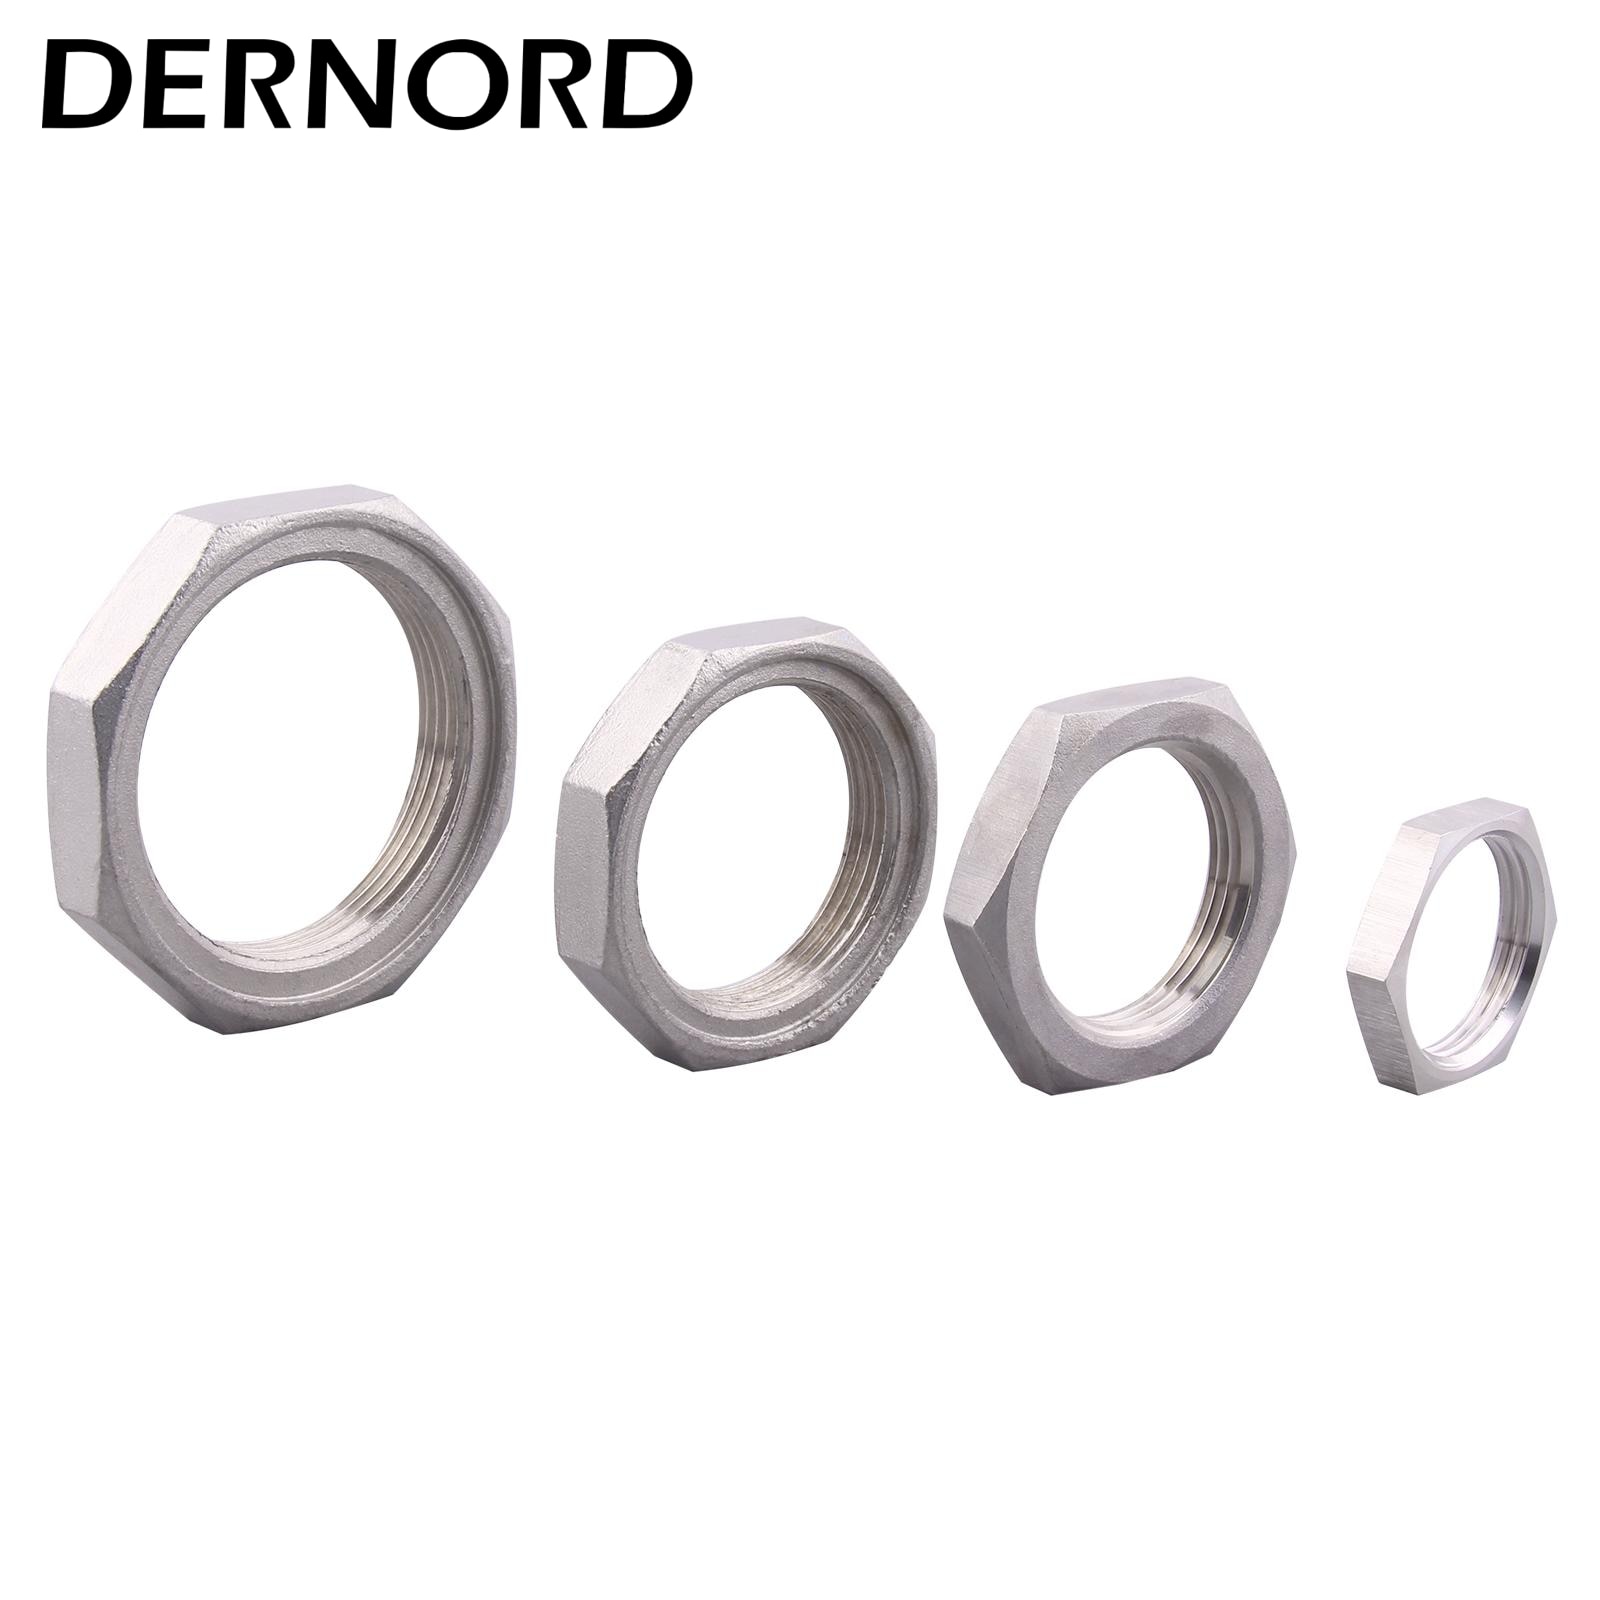 DERNORD Locknut Stainless Steel 304 1'' NPT/BSP 1.25'' 1.5'' 2'' BSP Locknut for DN25 DN32 DN40 DN50 Water Heating Element